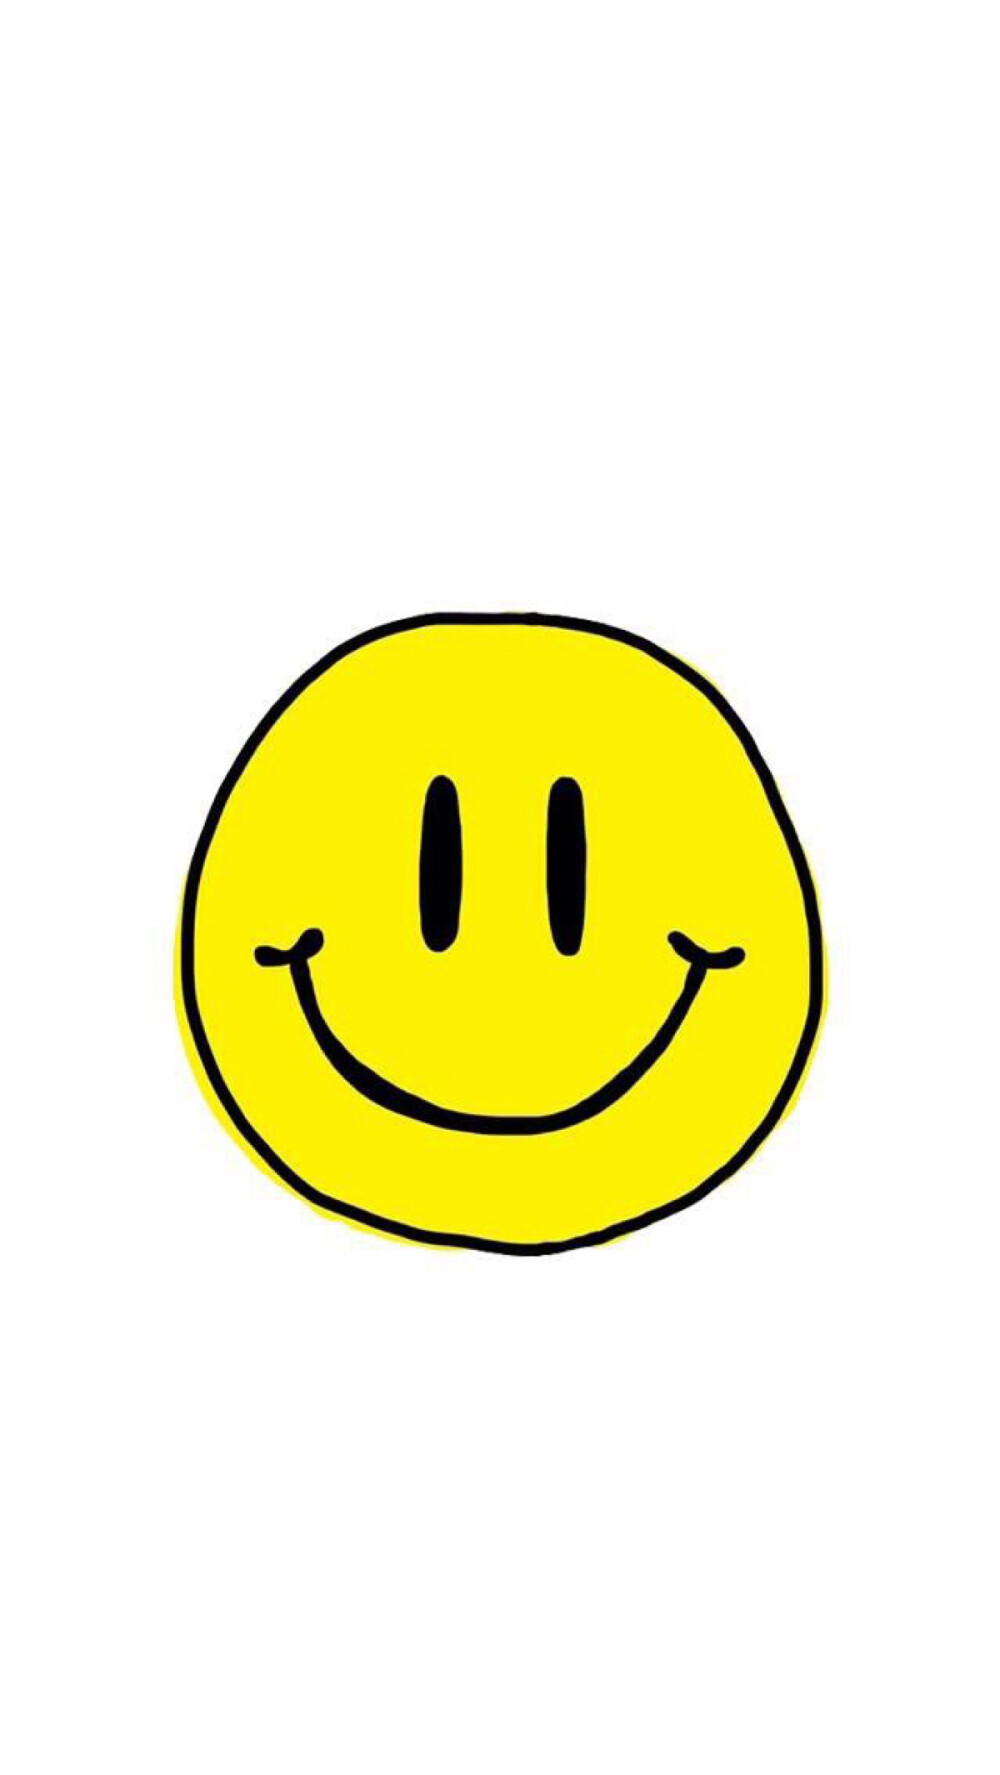 笑脸 黑色 白色 黄色 个性 手绘 插画 壁纸 锁屏 键盘 背景 头像